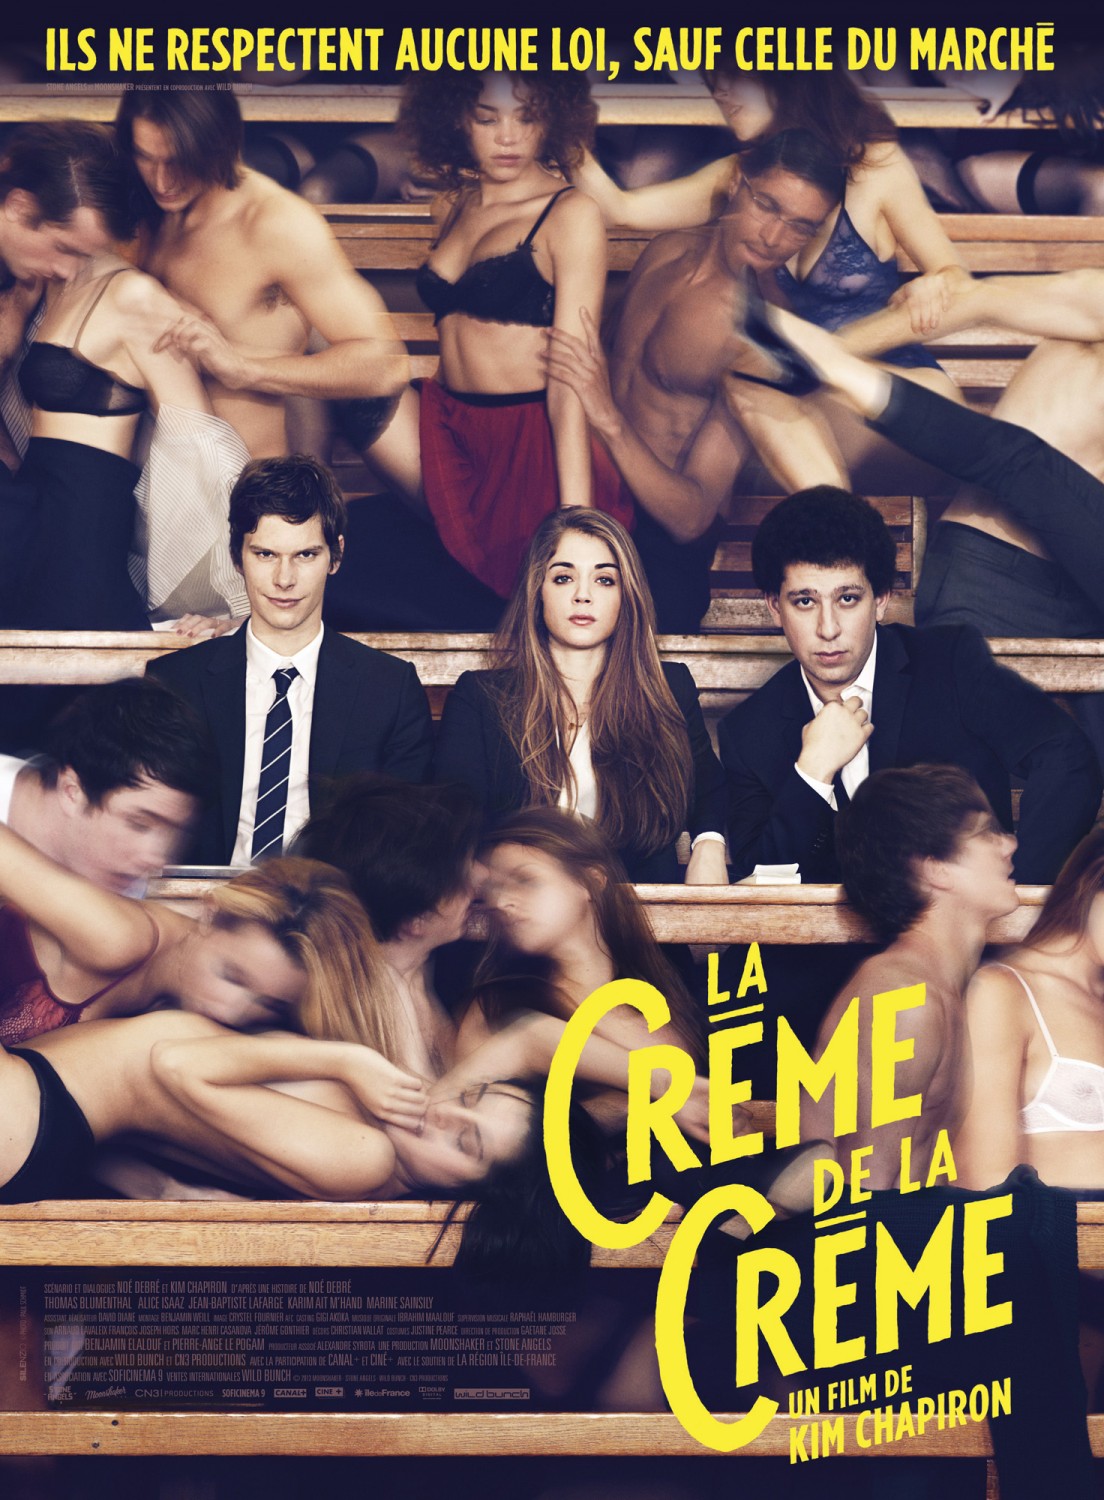 Extra Large Movie Poster Image for La crème de la crème 